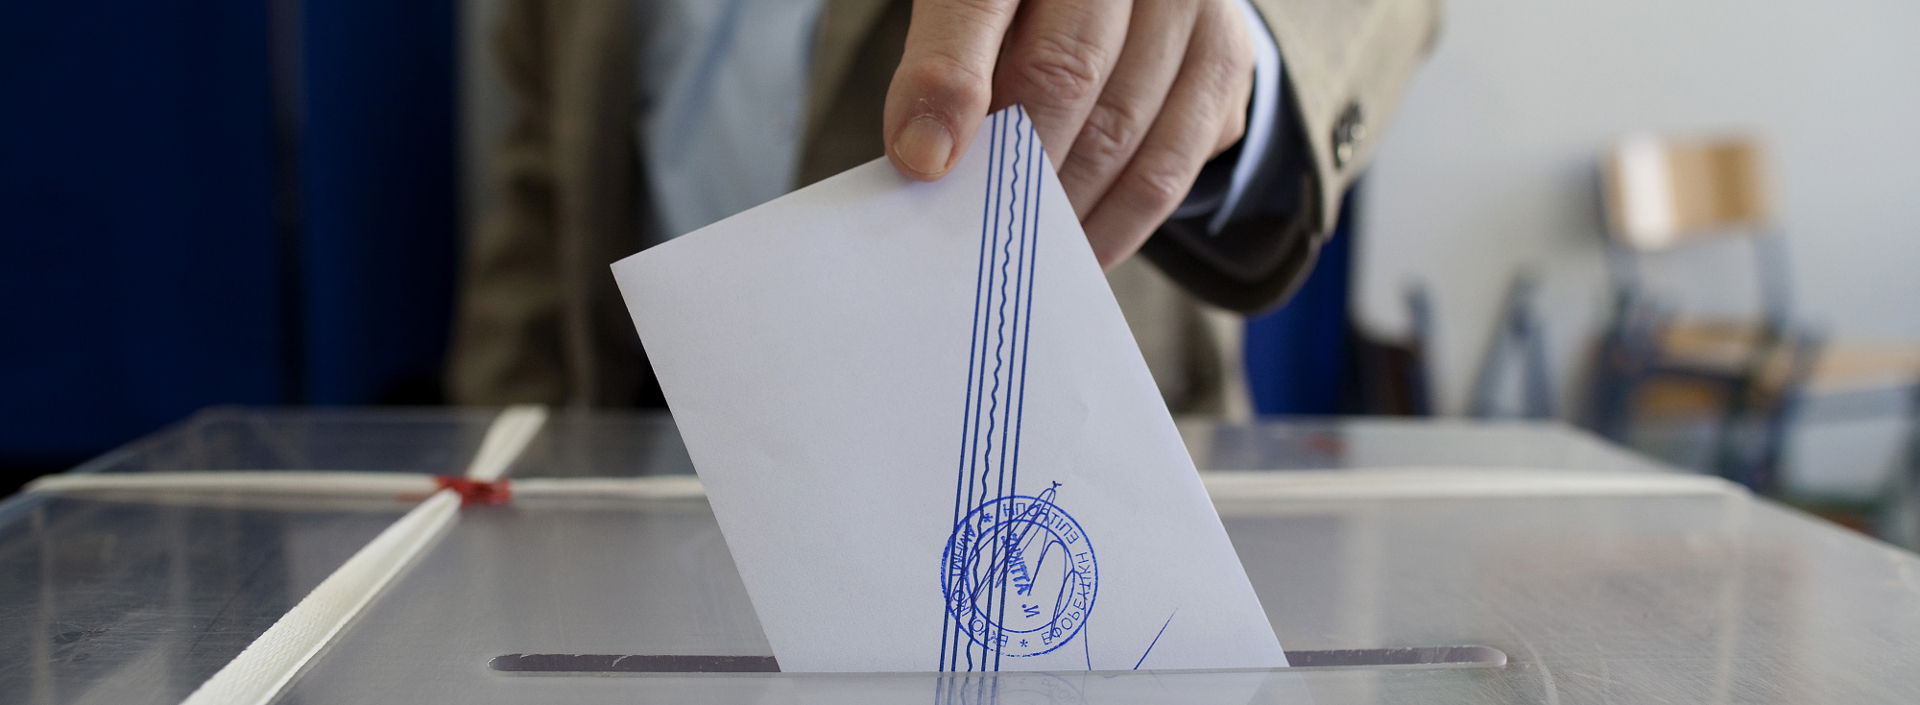 Αυτοδιοικητικές εκλογές 2019: Στις κάλπες ξανά το 80% των ψηφοφόρων